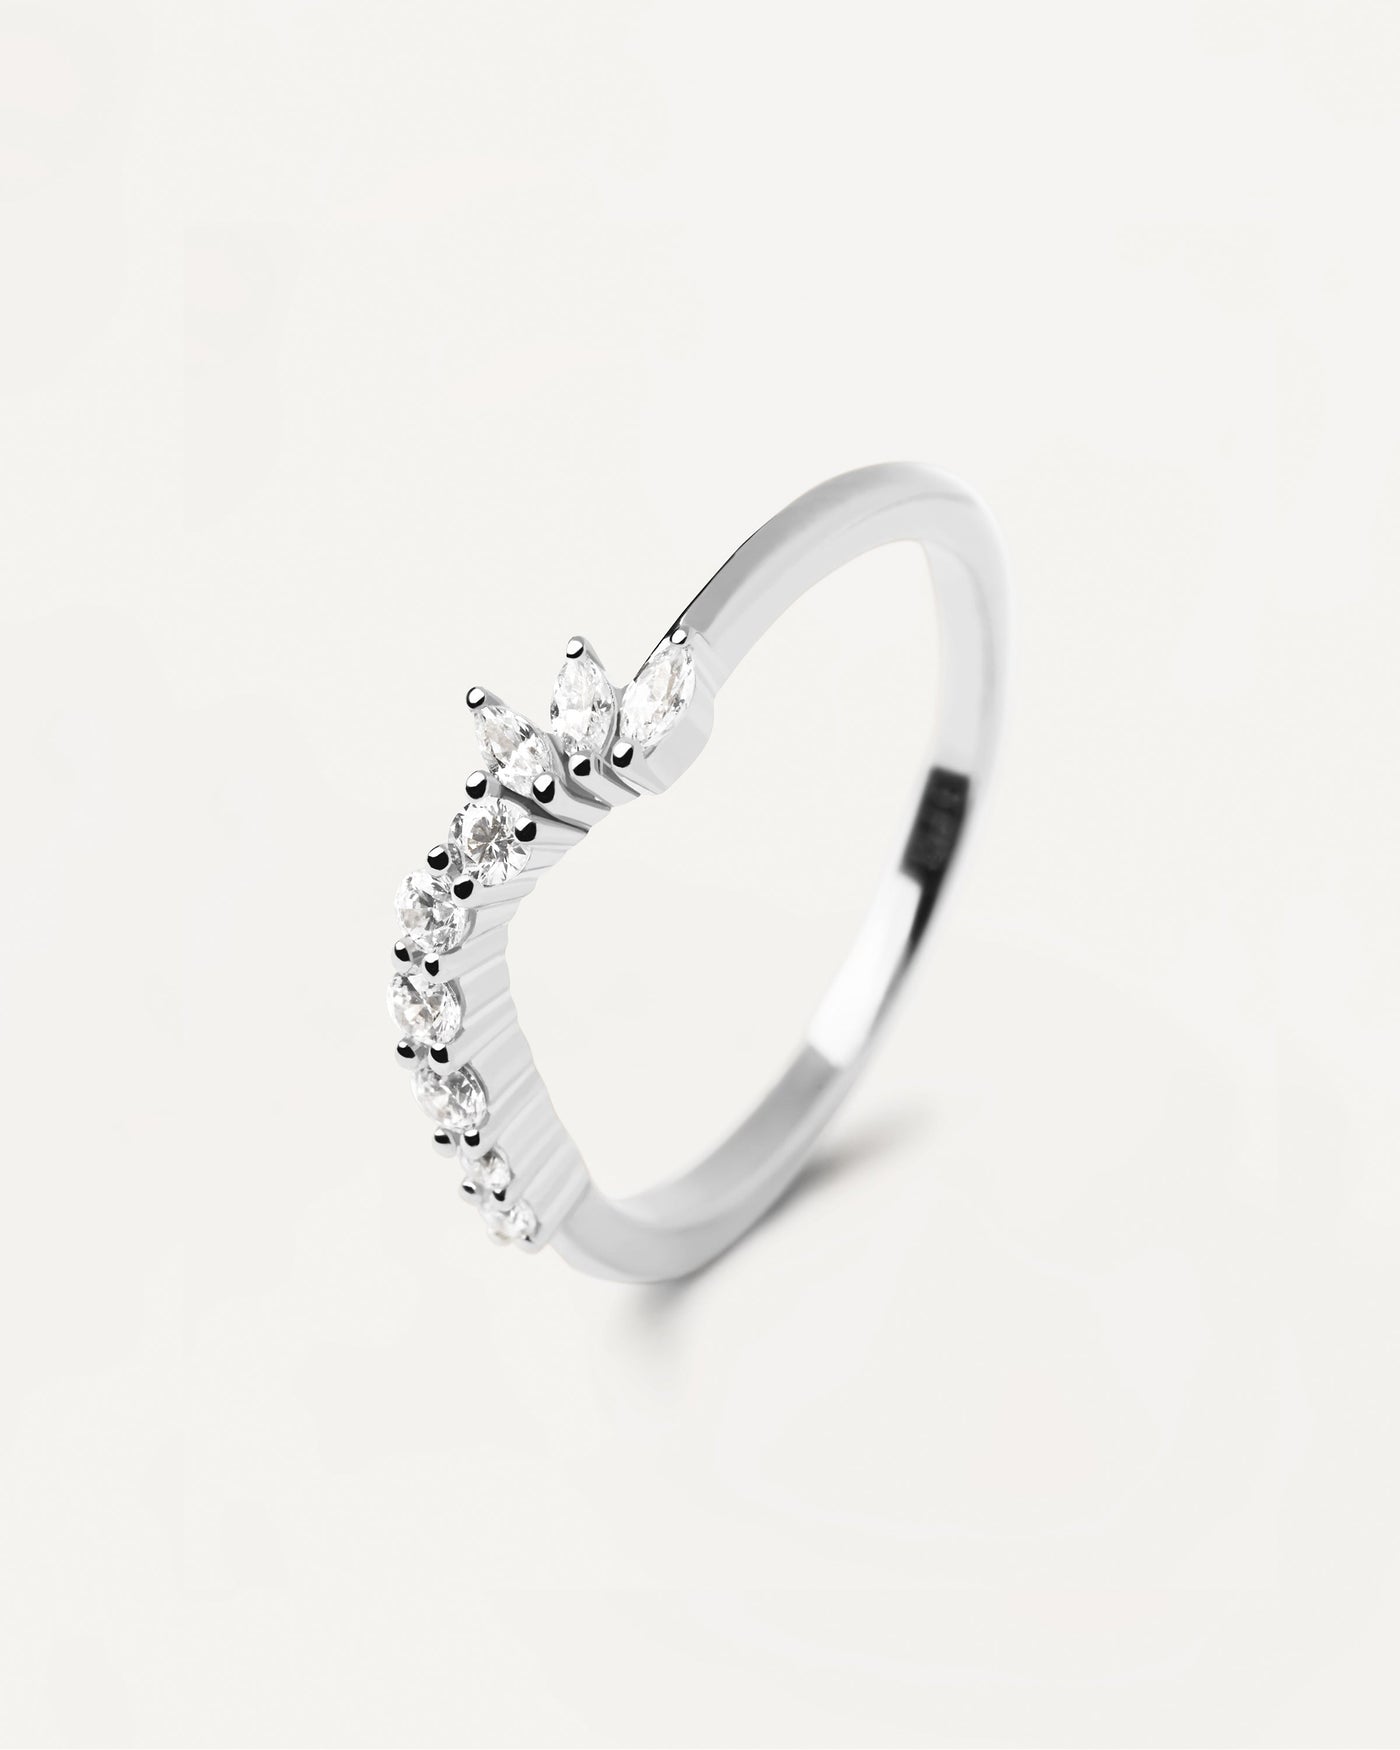 Dance Silberring. Wellenförmiger Ring aus Sterlingsilber mit weißen Zirkonia. Erhalten Sie die neuesten Produkte von PDPAOLA. Geben Sie Ihre Bestellung sicher auf und erhalten Sie diesen Bestseller.